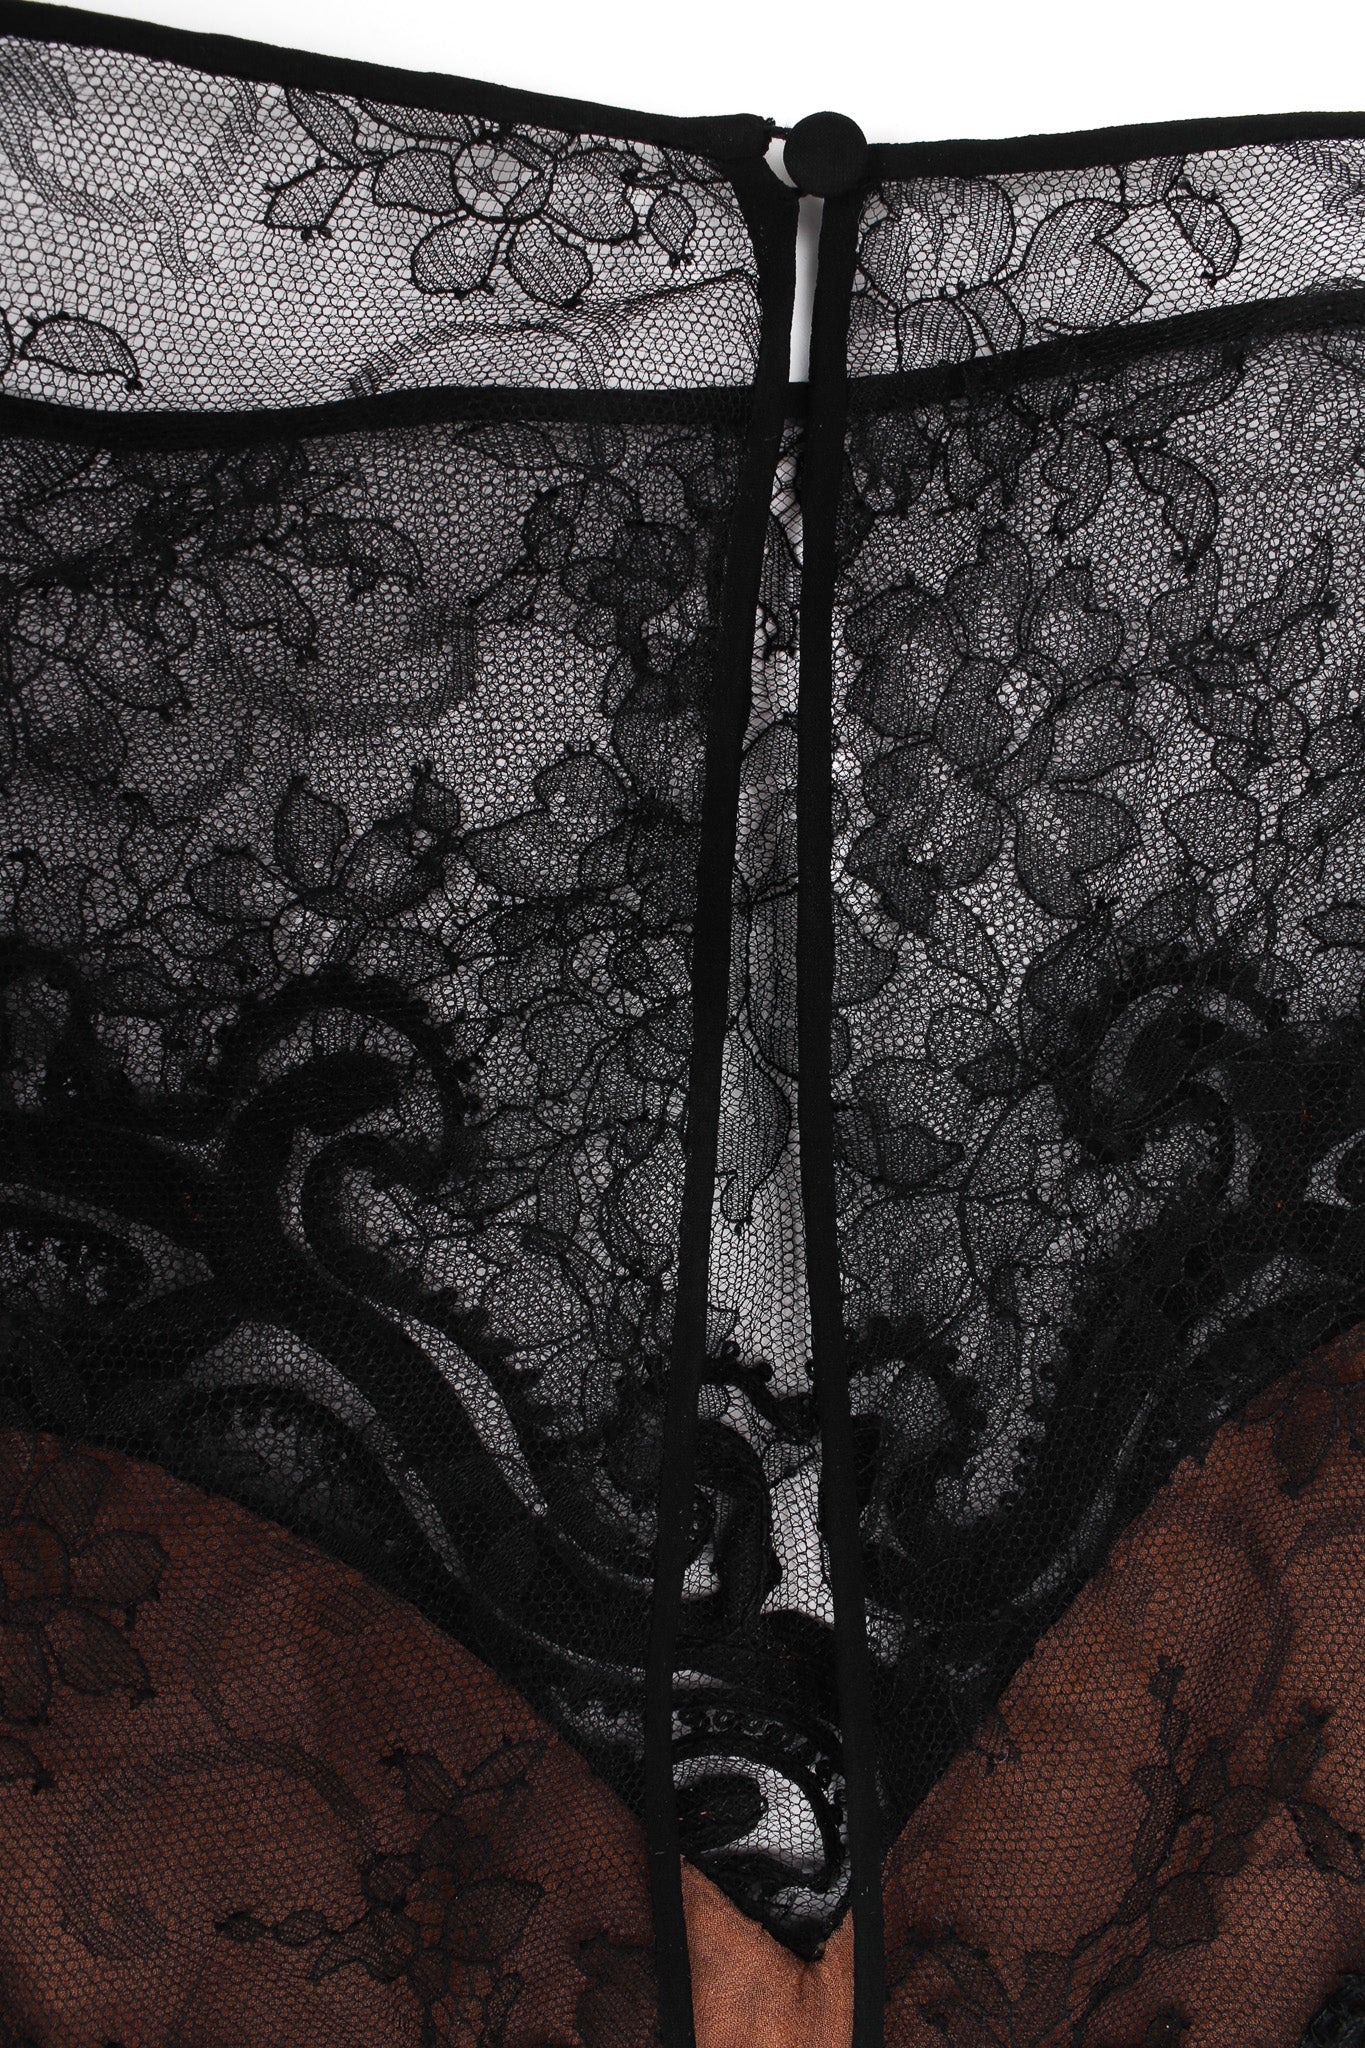 Vintage Oscar de la Renta Soutache Chantilly Lace Ruffle Dress back lace keyhole @ Recess LA